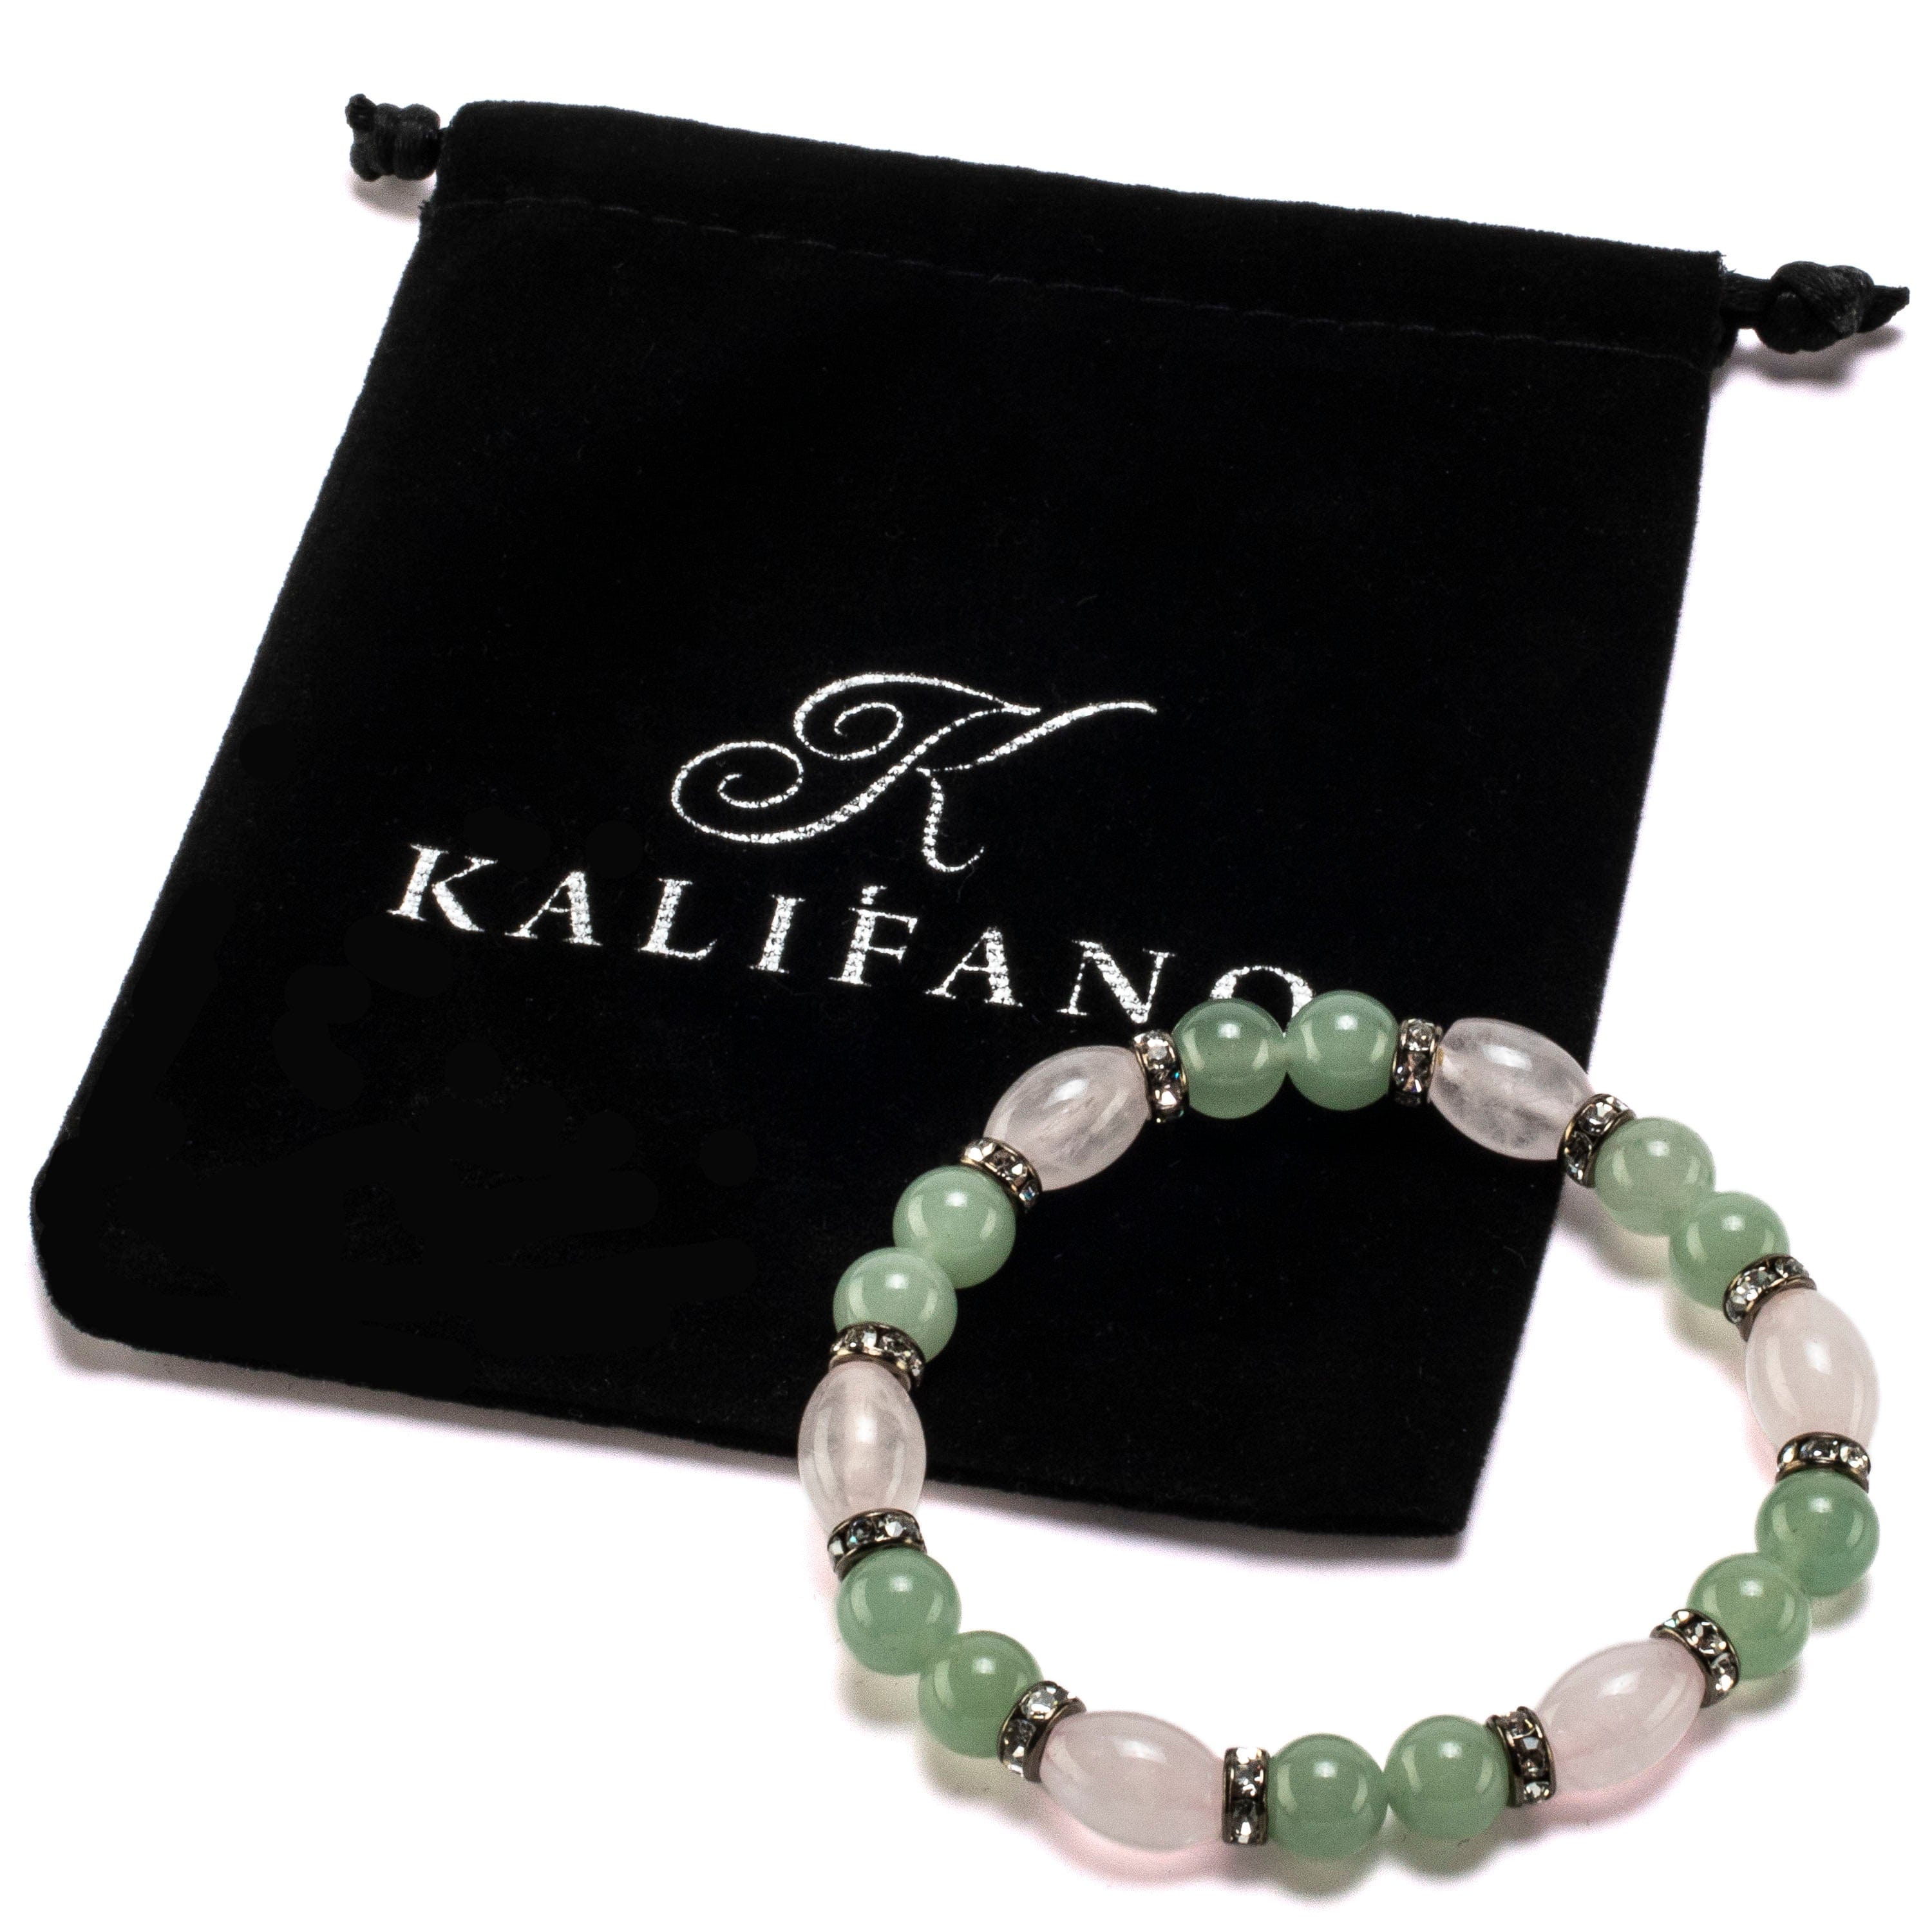 Kalifano Gemstone Bracelets Oval Rose Quartz and Round Aventurine with Crystal Accent Beads Gemstone Elastic Bracelet BLUE-BGP-034